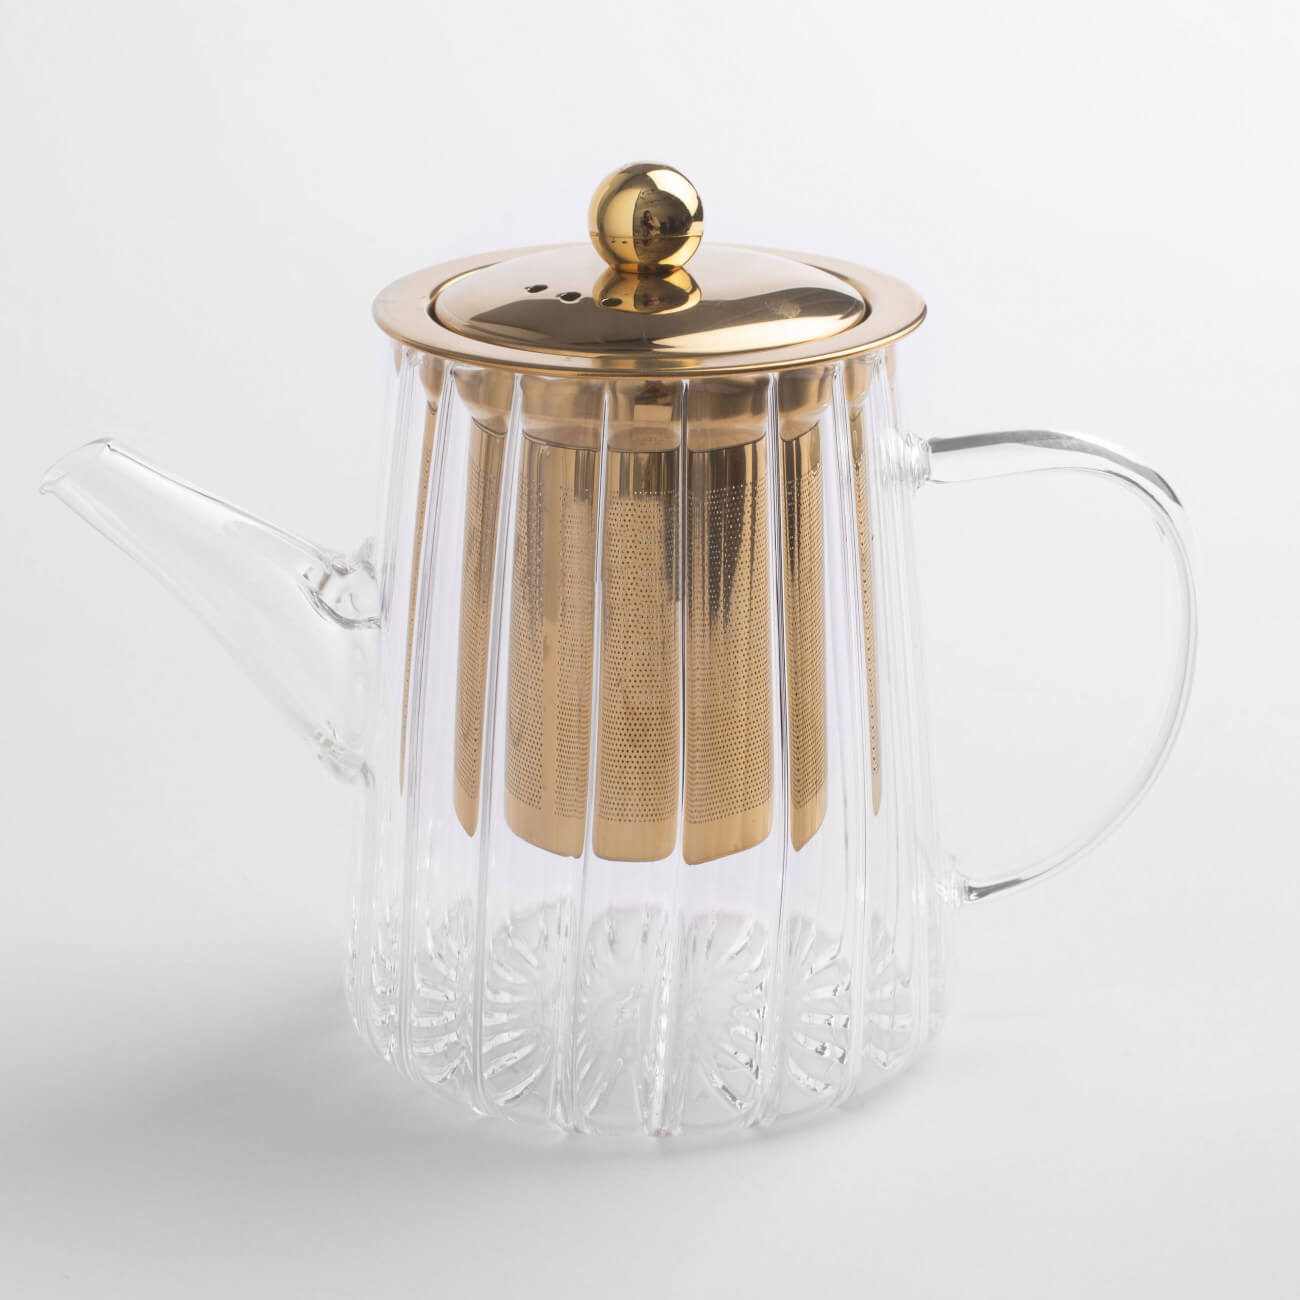 Чайник заварочный, 600 мл, стекло Б/сталь, золотистый, Camellia gold чайник заварочный син 1 5